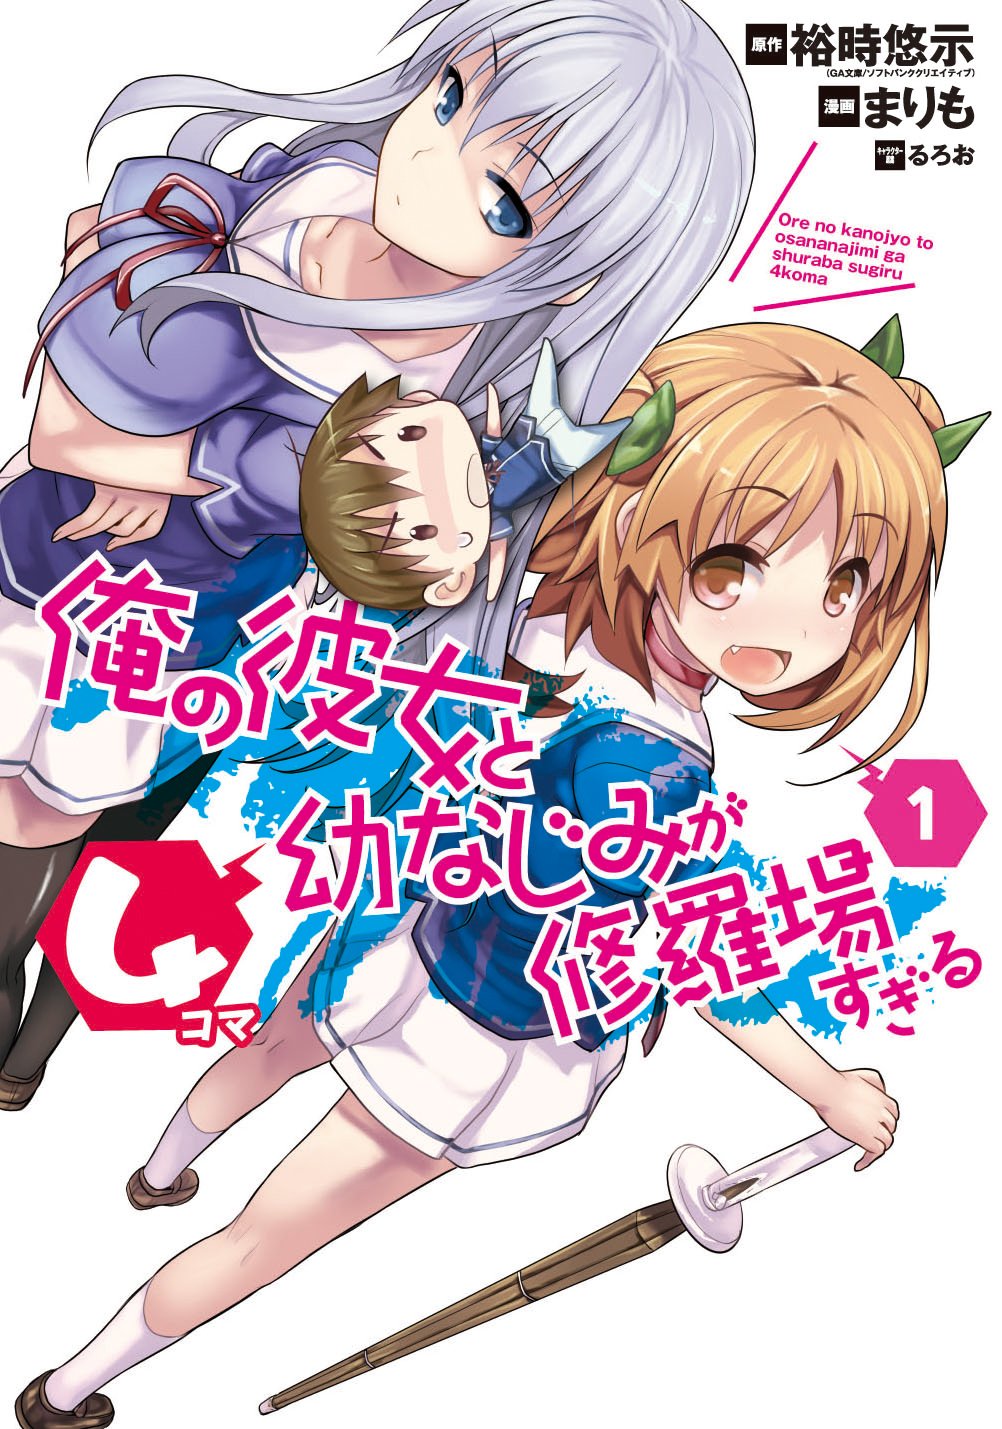 Ore no Kanojo to Osananajimi ga Shuraba Sugiru [Light Novel] - Page 15 -  AnimeSuki Forum